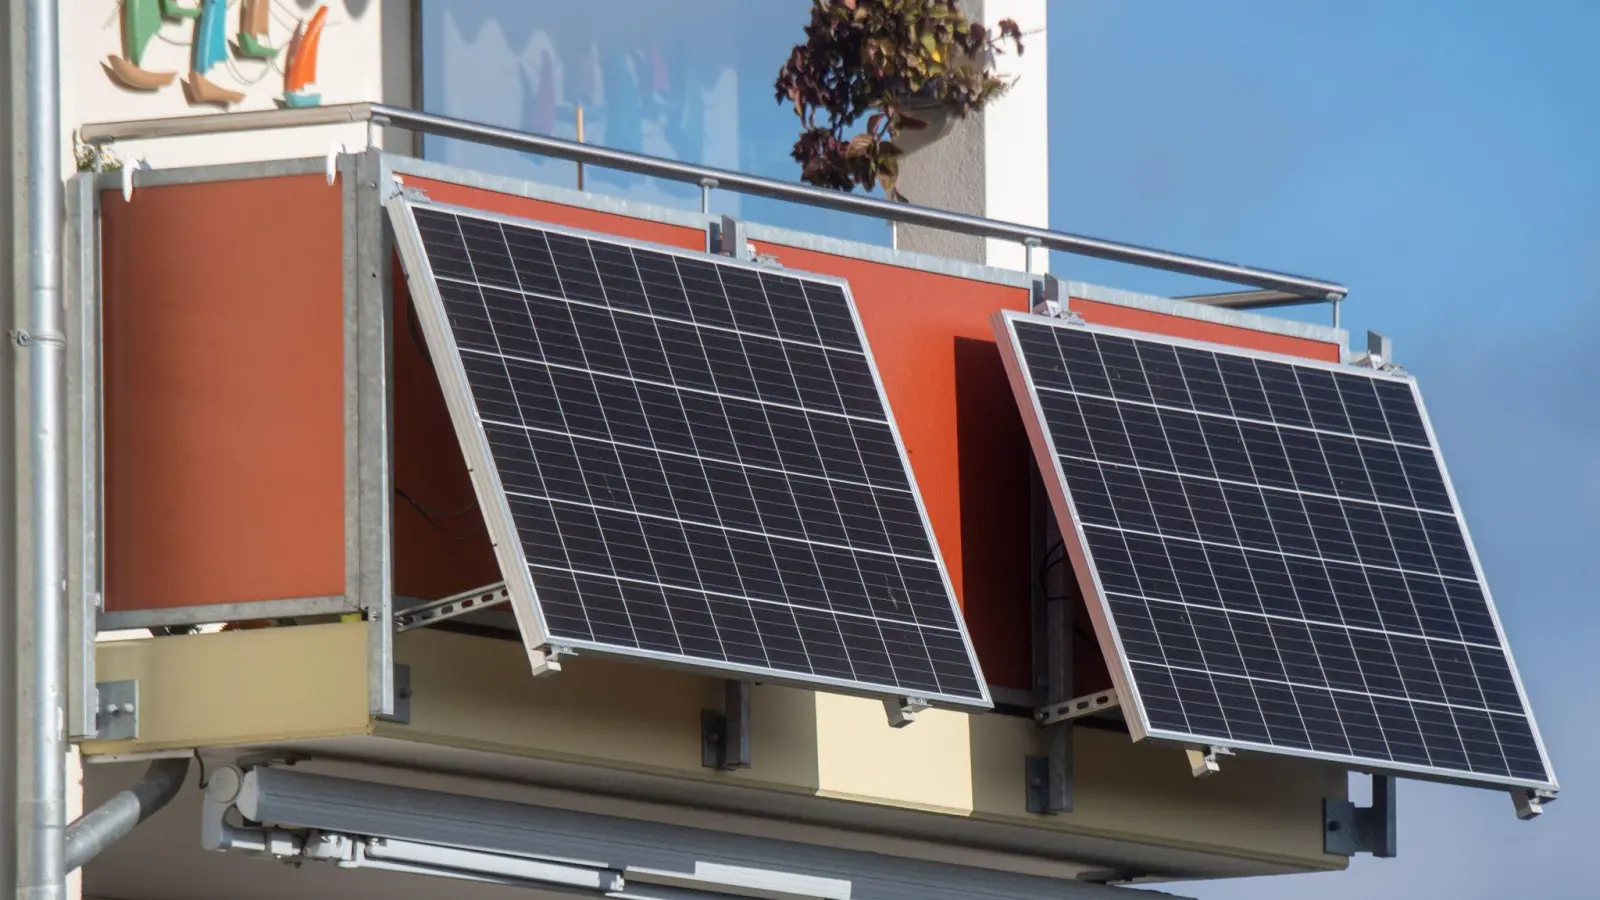 Solarmodule für ein sogenanntes Balkonkraftwerk hängen an einem Balkon. (Foto: Stefan Sauer/dpa)